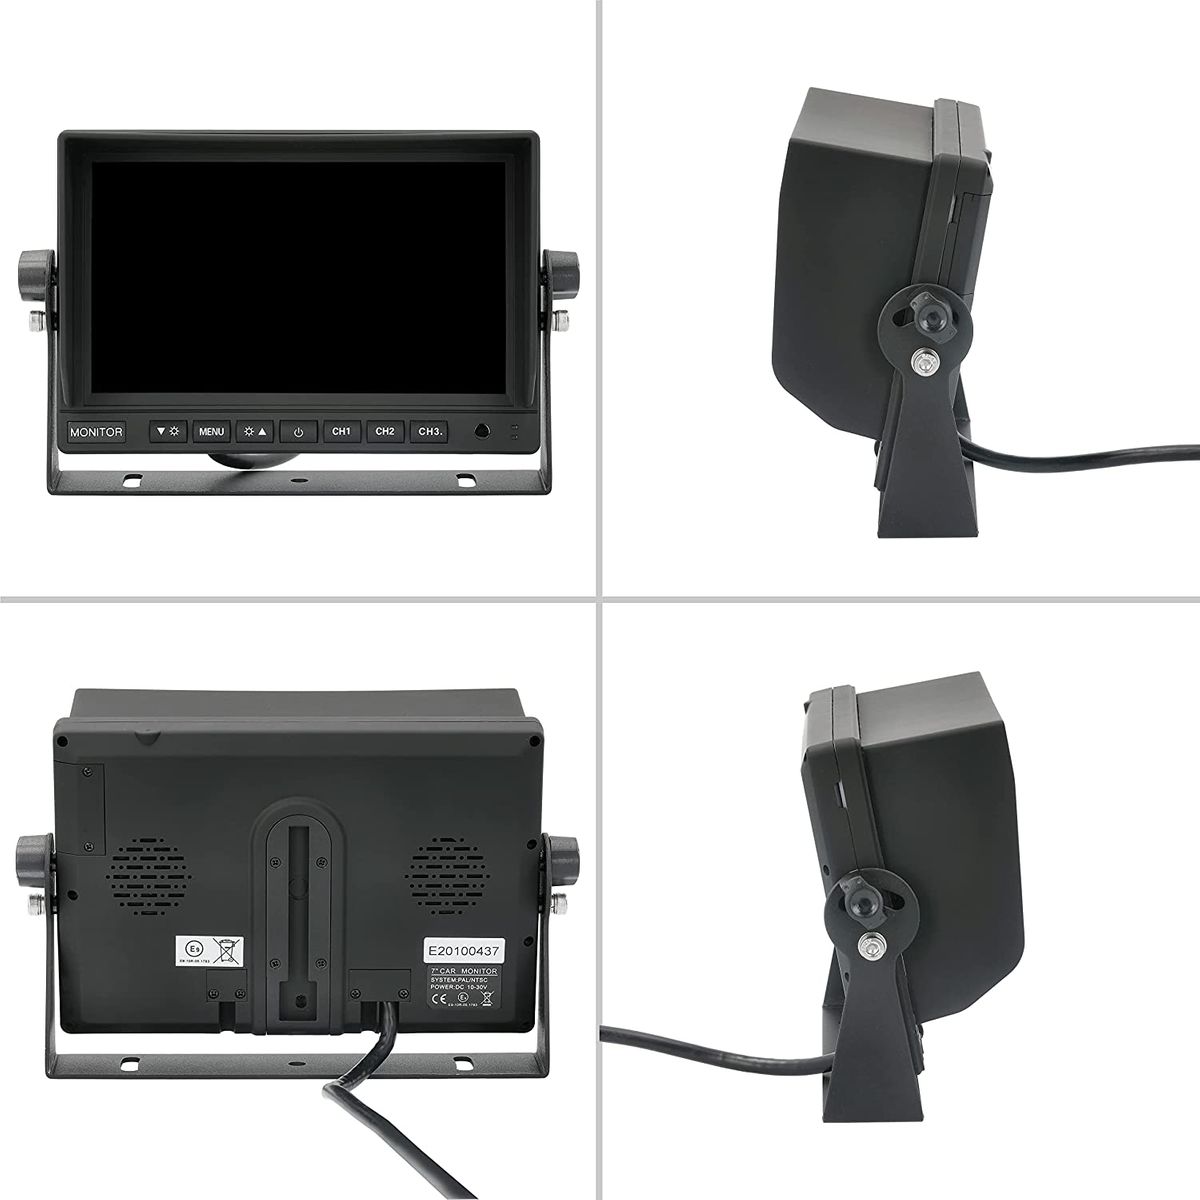 VSG 13163 – 7 1080P-HD LKW Rückfahrmonitor, Heavy Duty, Monitor inkl. Adapterkabel, e-Zulassung, Nachtsicht, 3 x AV IN, 12-24 V 22A. 7 1080P-HD Rückfahrmonitor